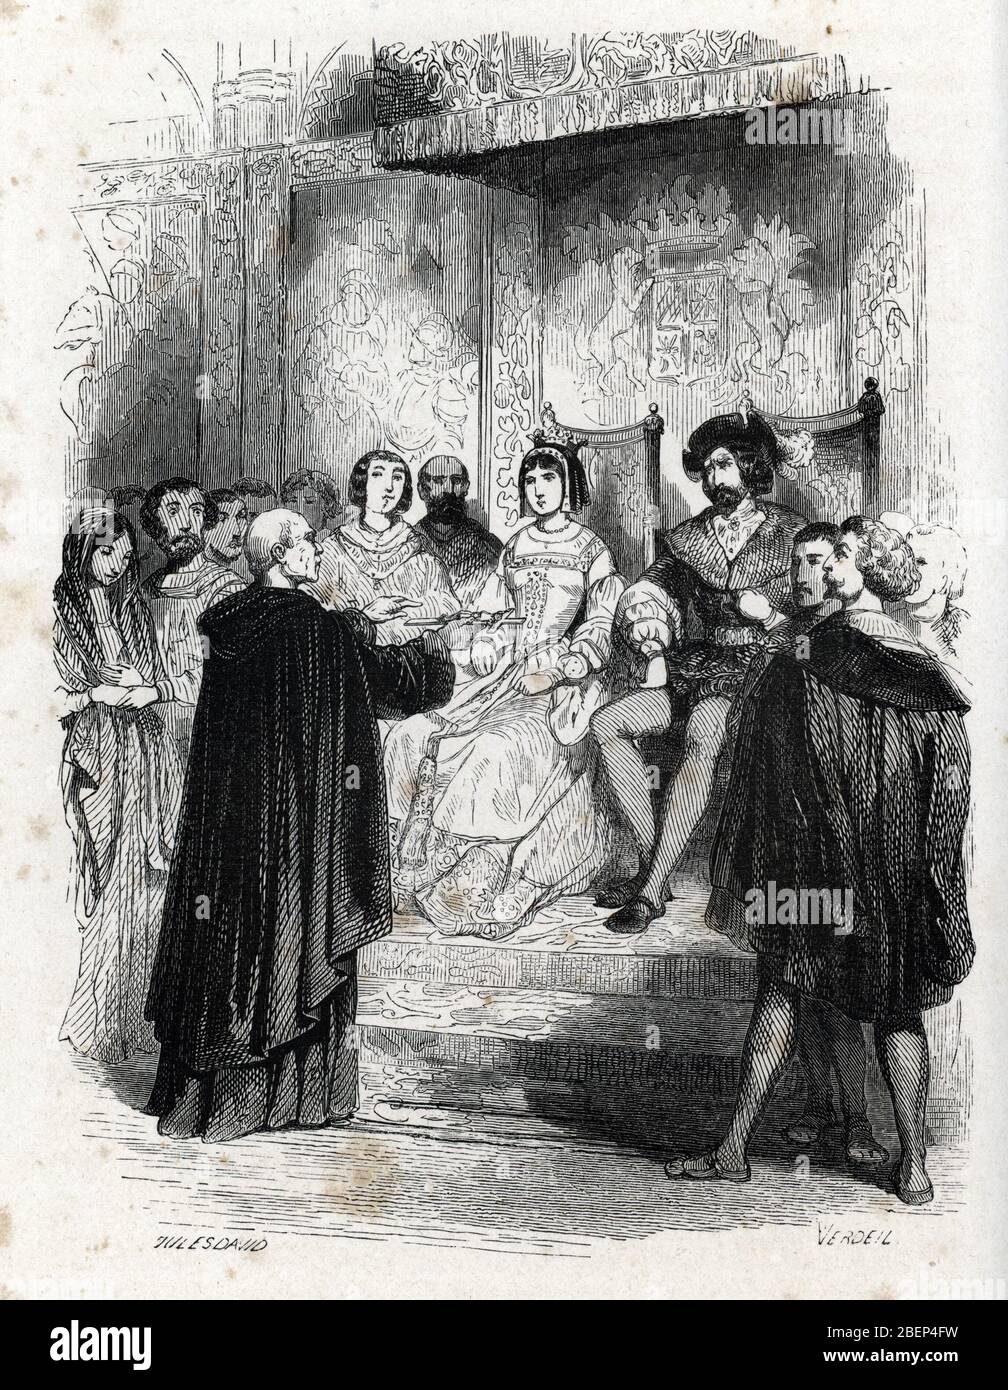 Inquisiton espagnole : portrait de Tomas de Torquemada (1420-1498) tenant un crucifix face aux rois d'Espagne Isabelle de Castille et du roi Ferdinand Stock Photo